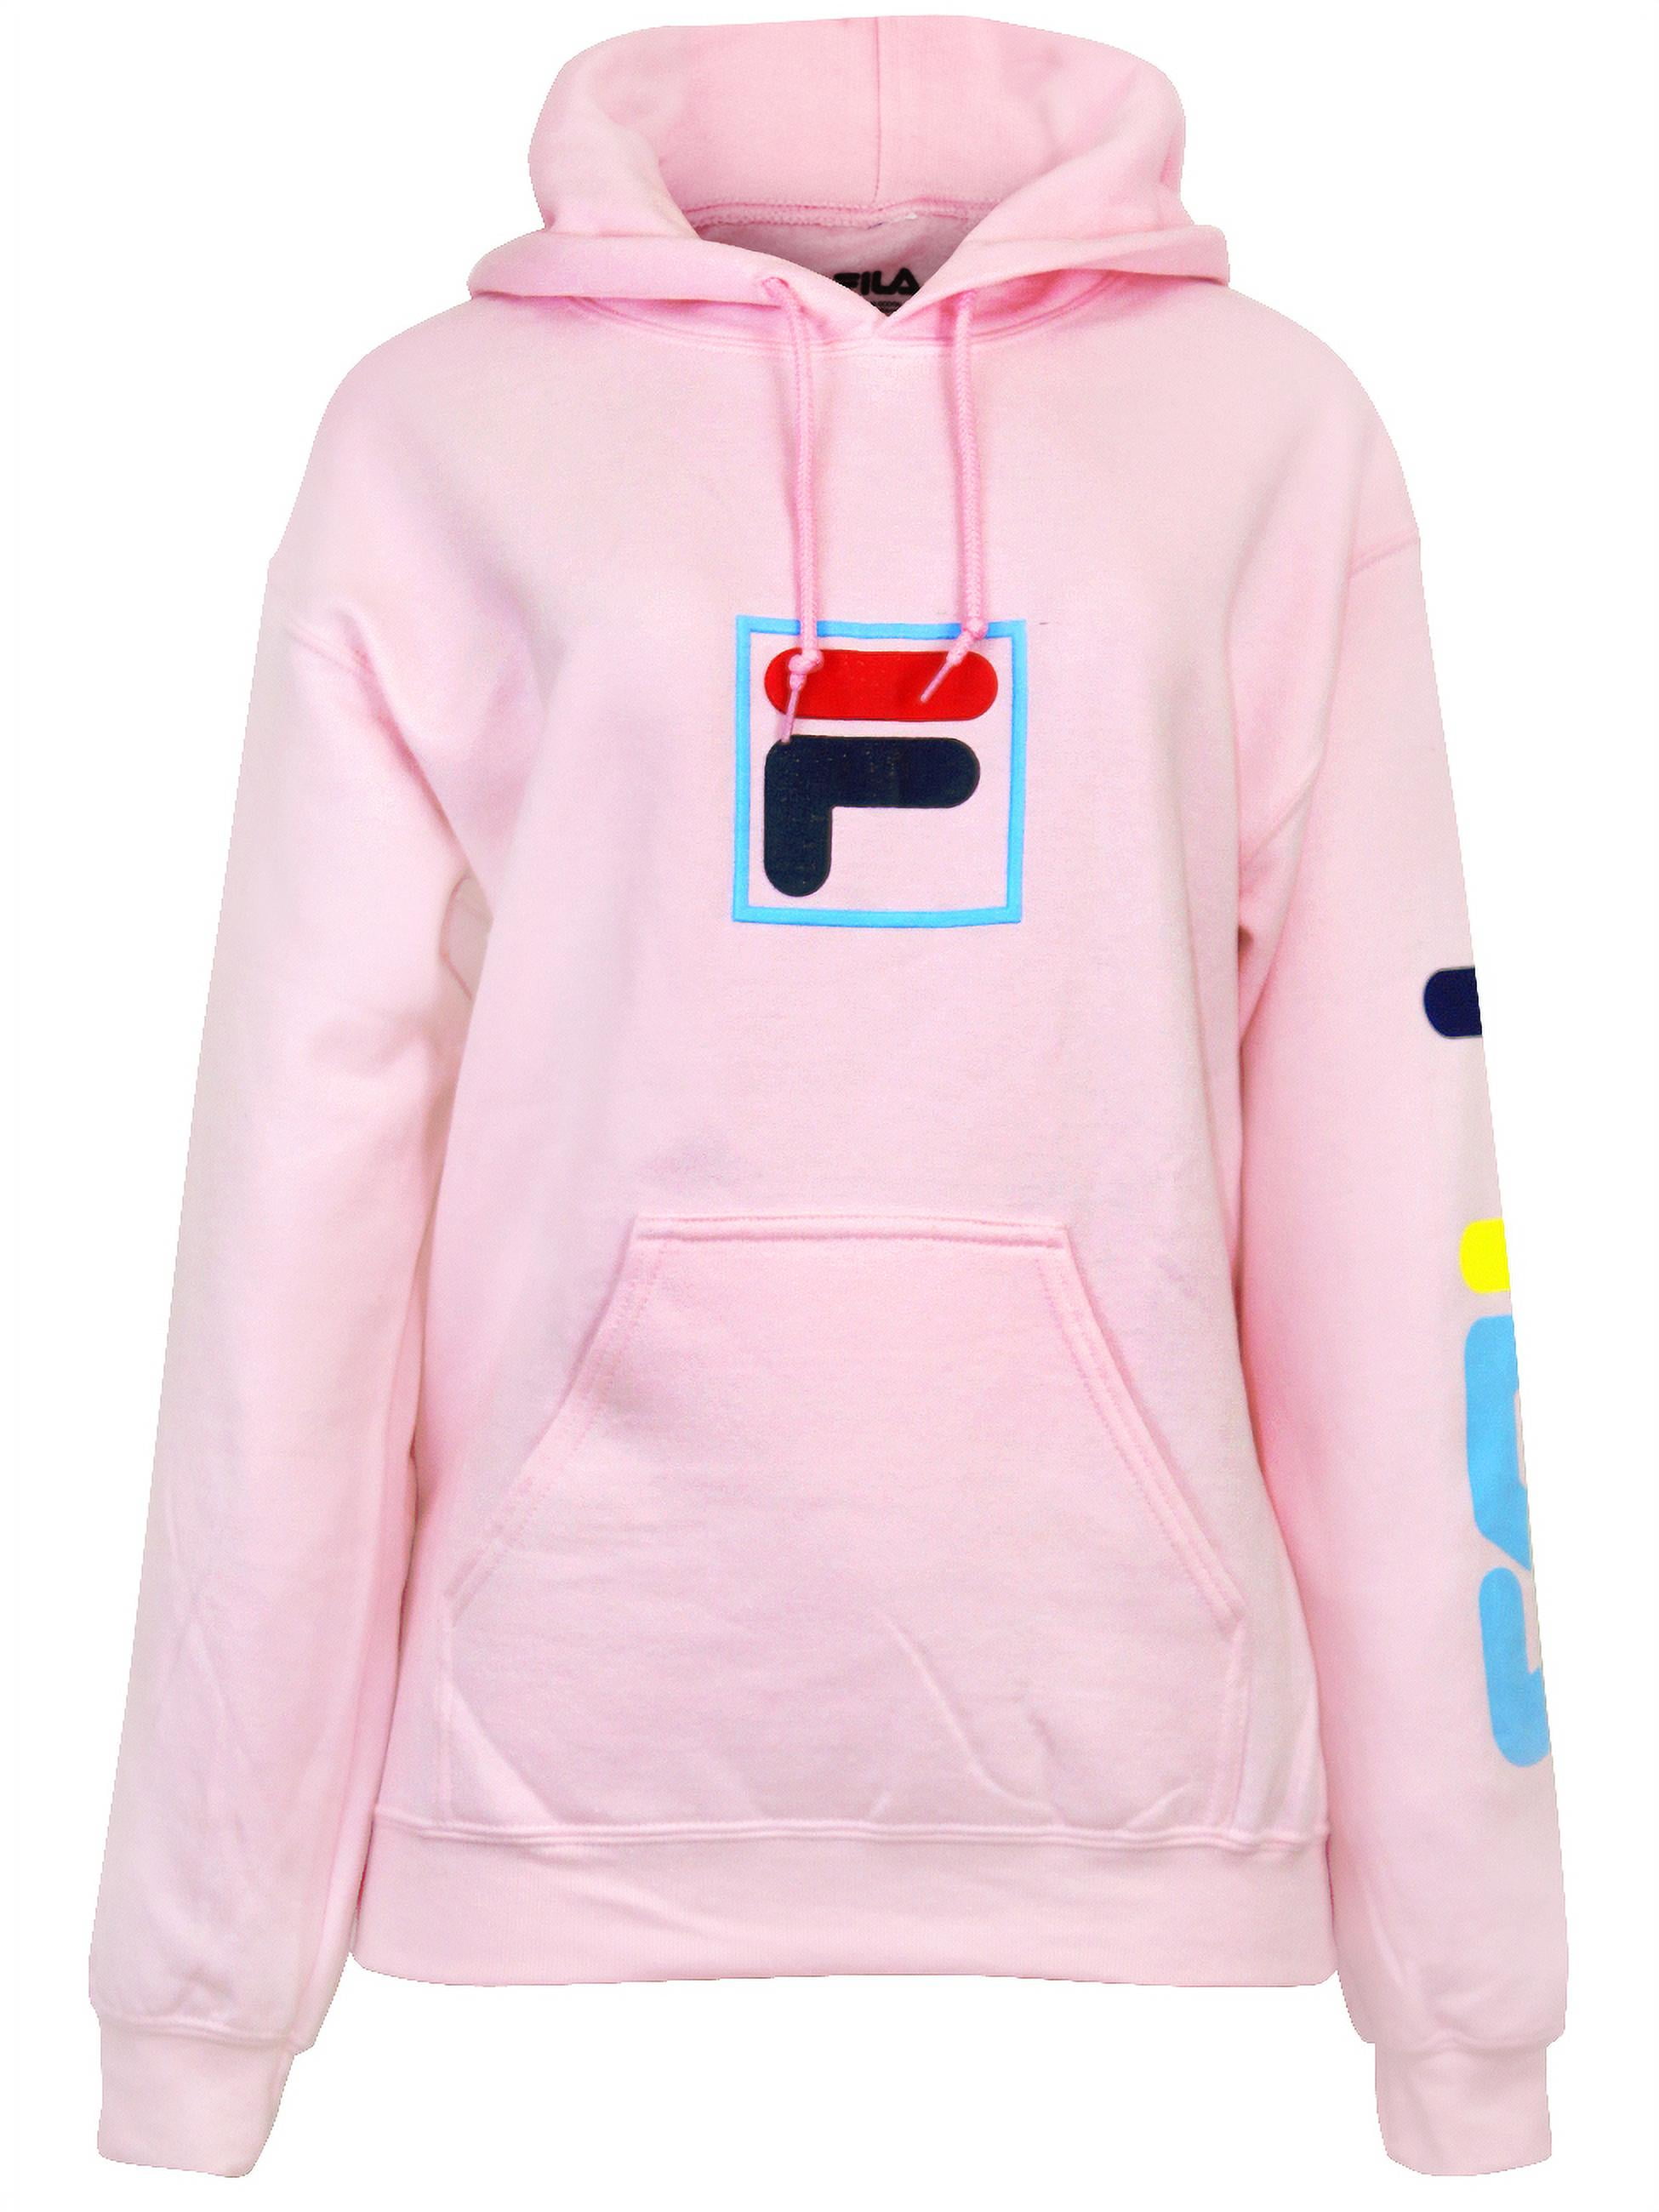 Jakke Voksen enhed Fila Women's Graphic Fleece Hoodie with Kangaroo Pocket Light Pink -  Walmart.com